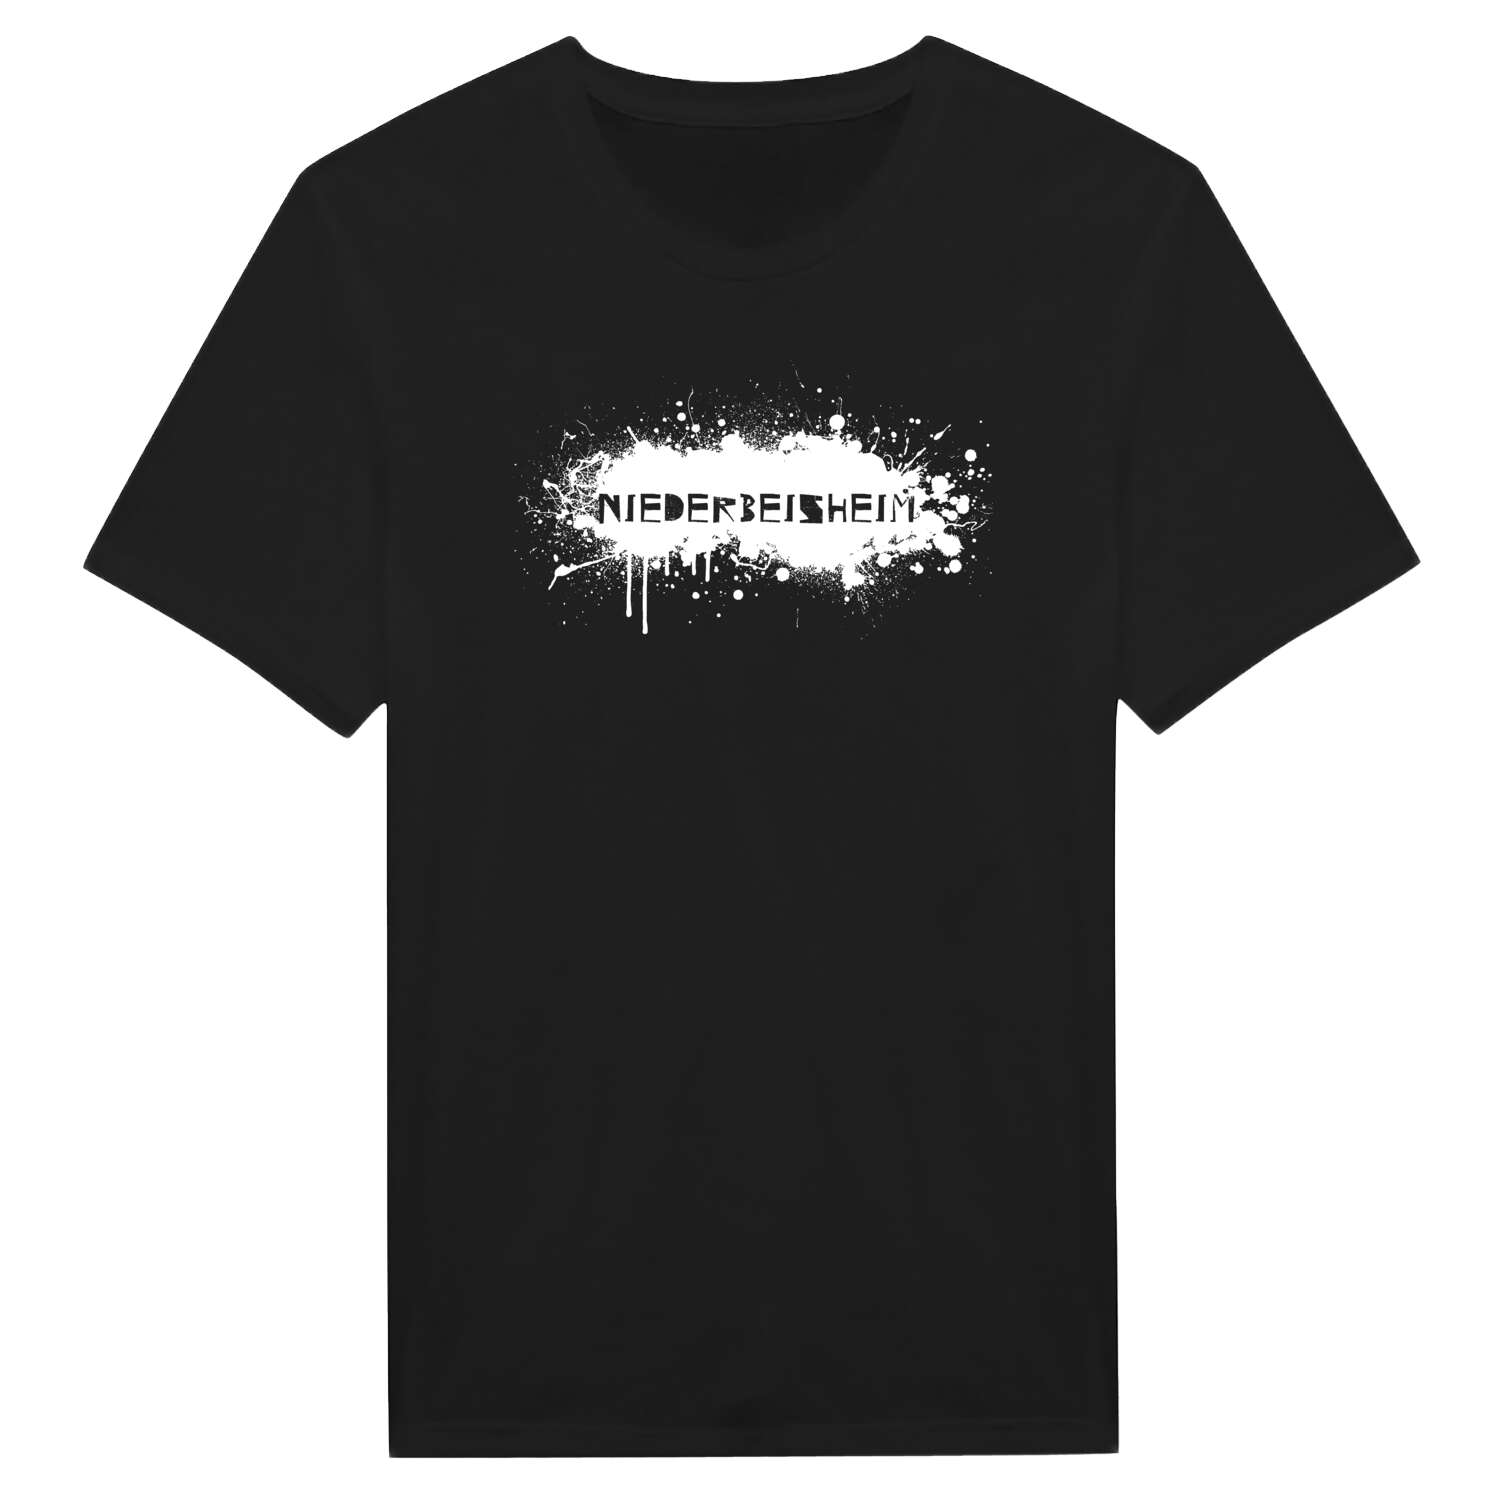 Niederbeisheim T-Shirt »Paint Splash Punk«